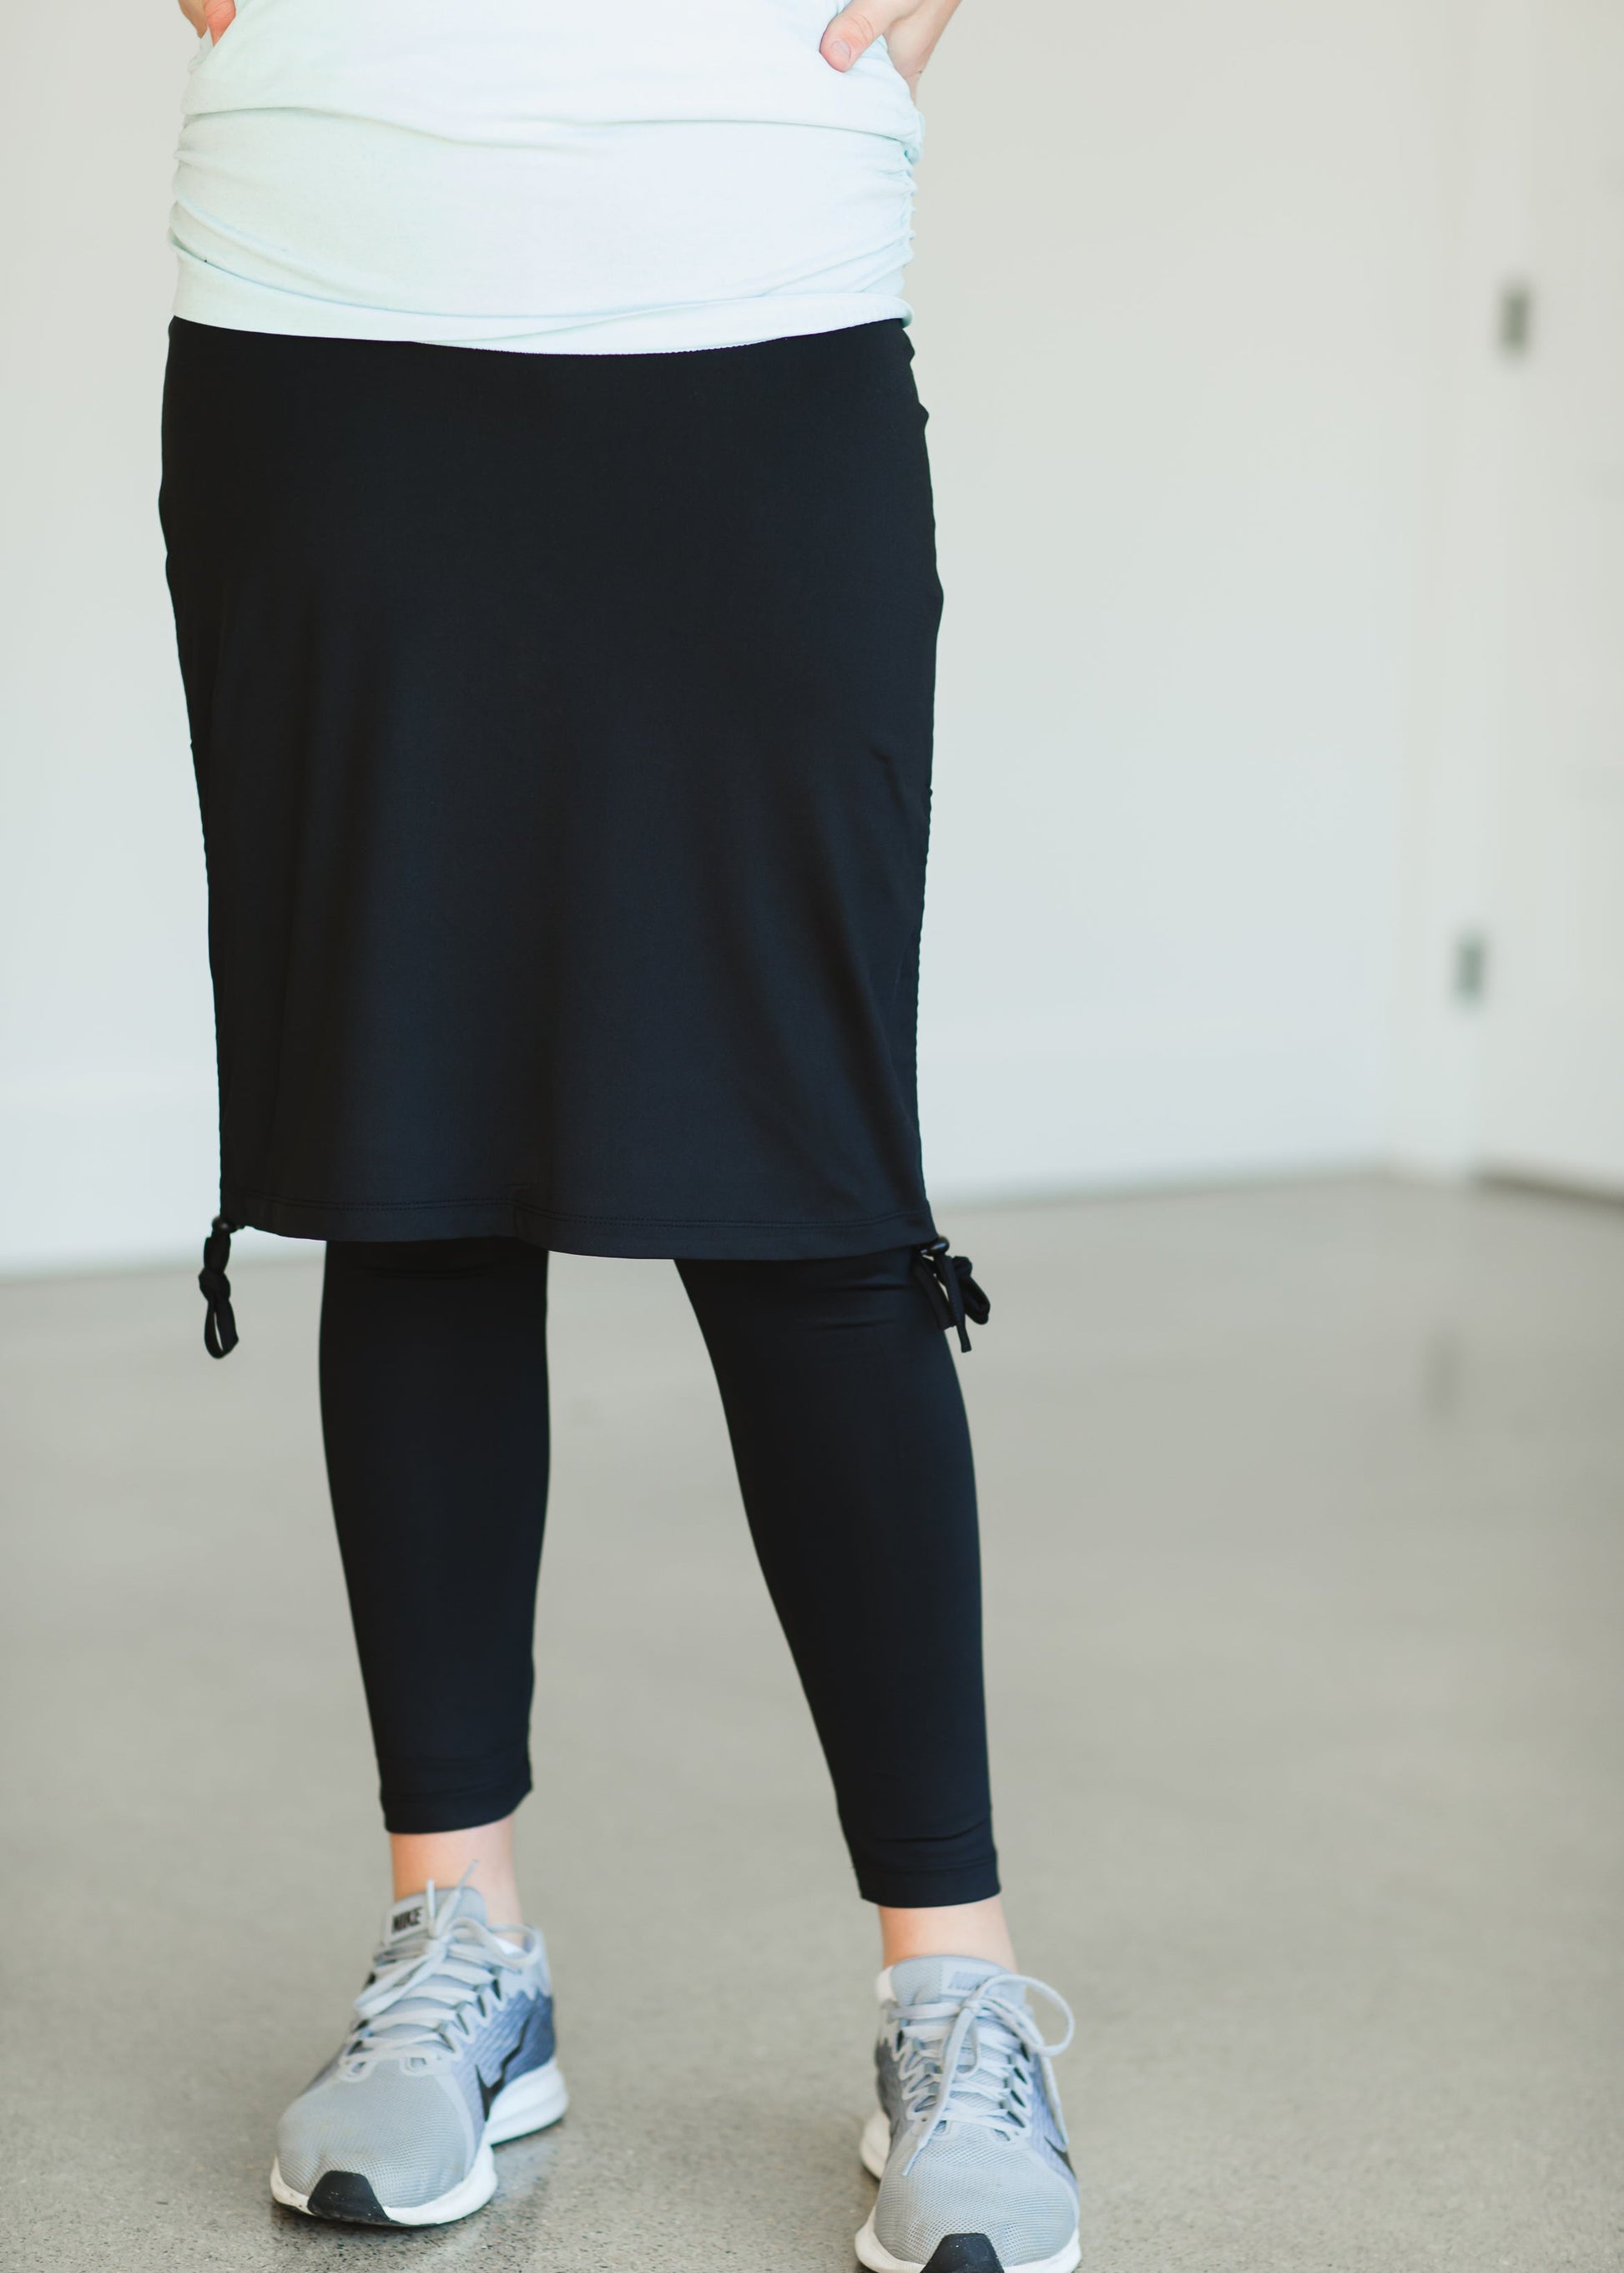 Snoga Black Side Tie Athletic Skirt - FINAL SALE – Inherit Co.